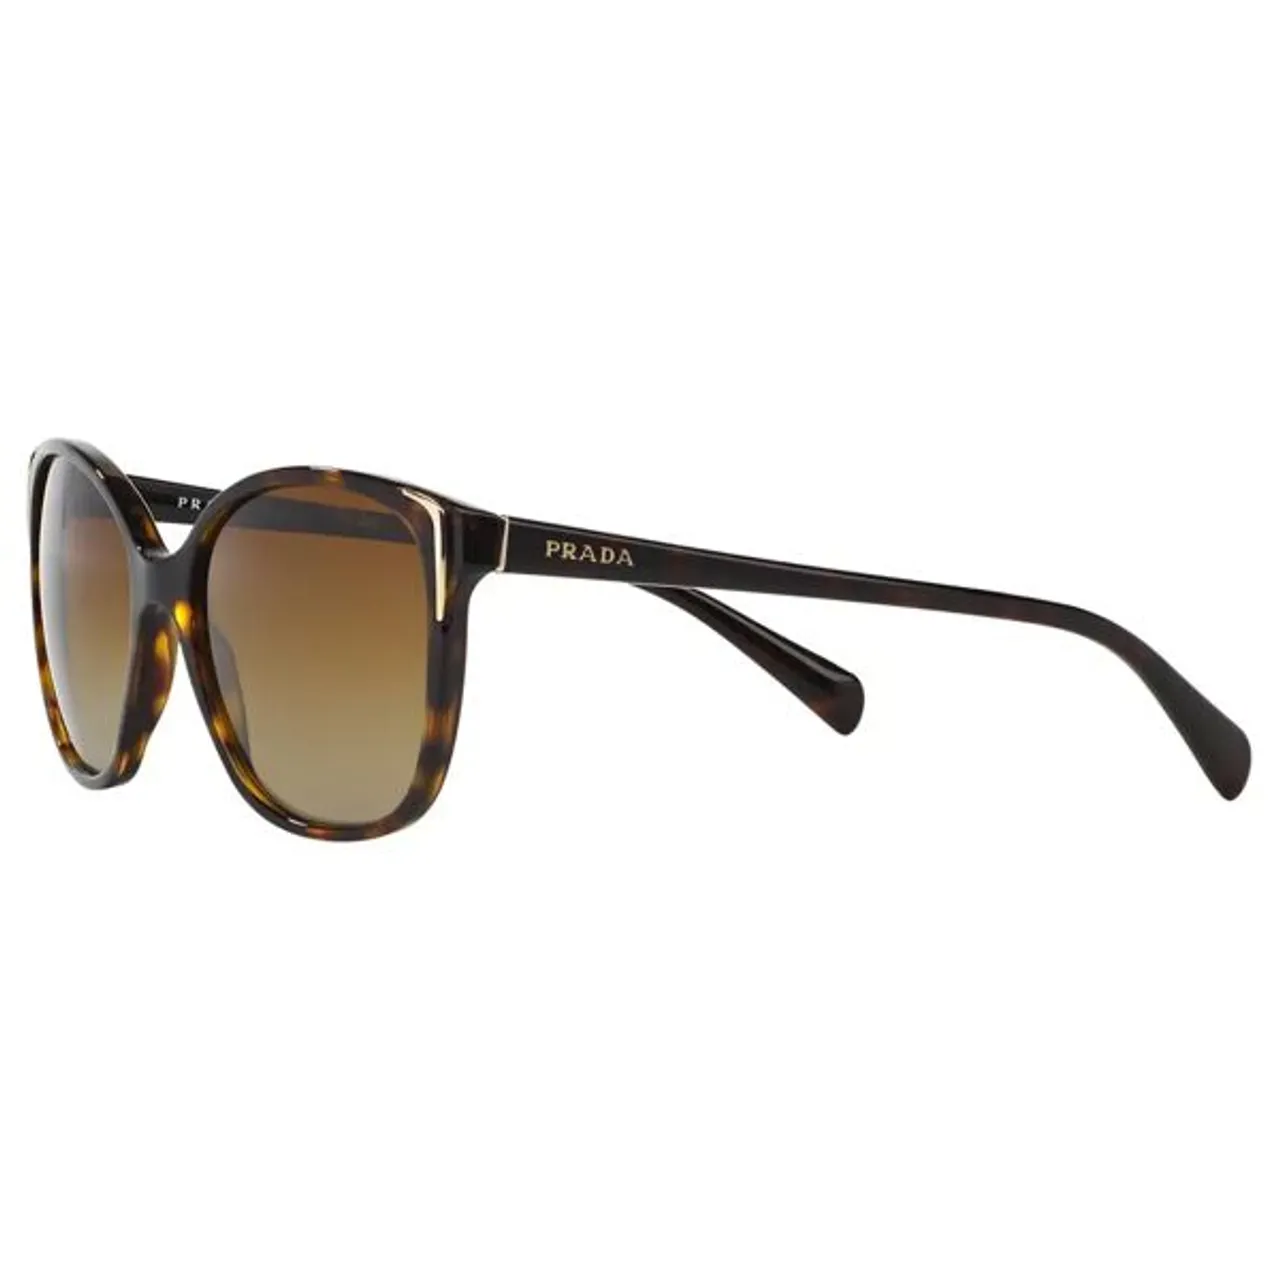 Prada PR01OS Polarised Square Sunglasses, Tortoiseshell - Tortoiseshell - Female